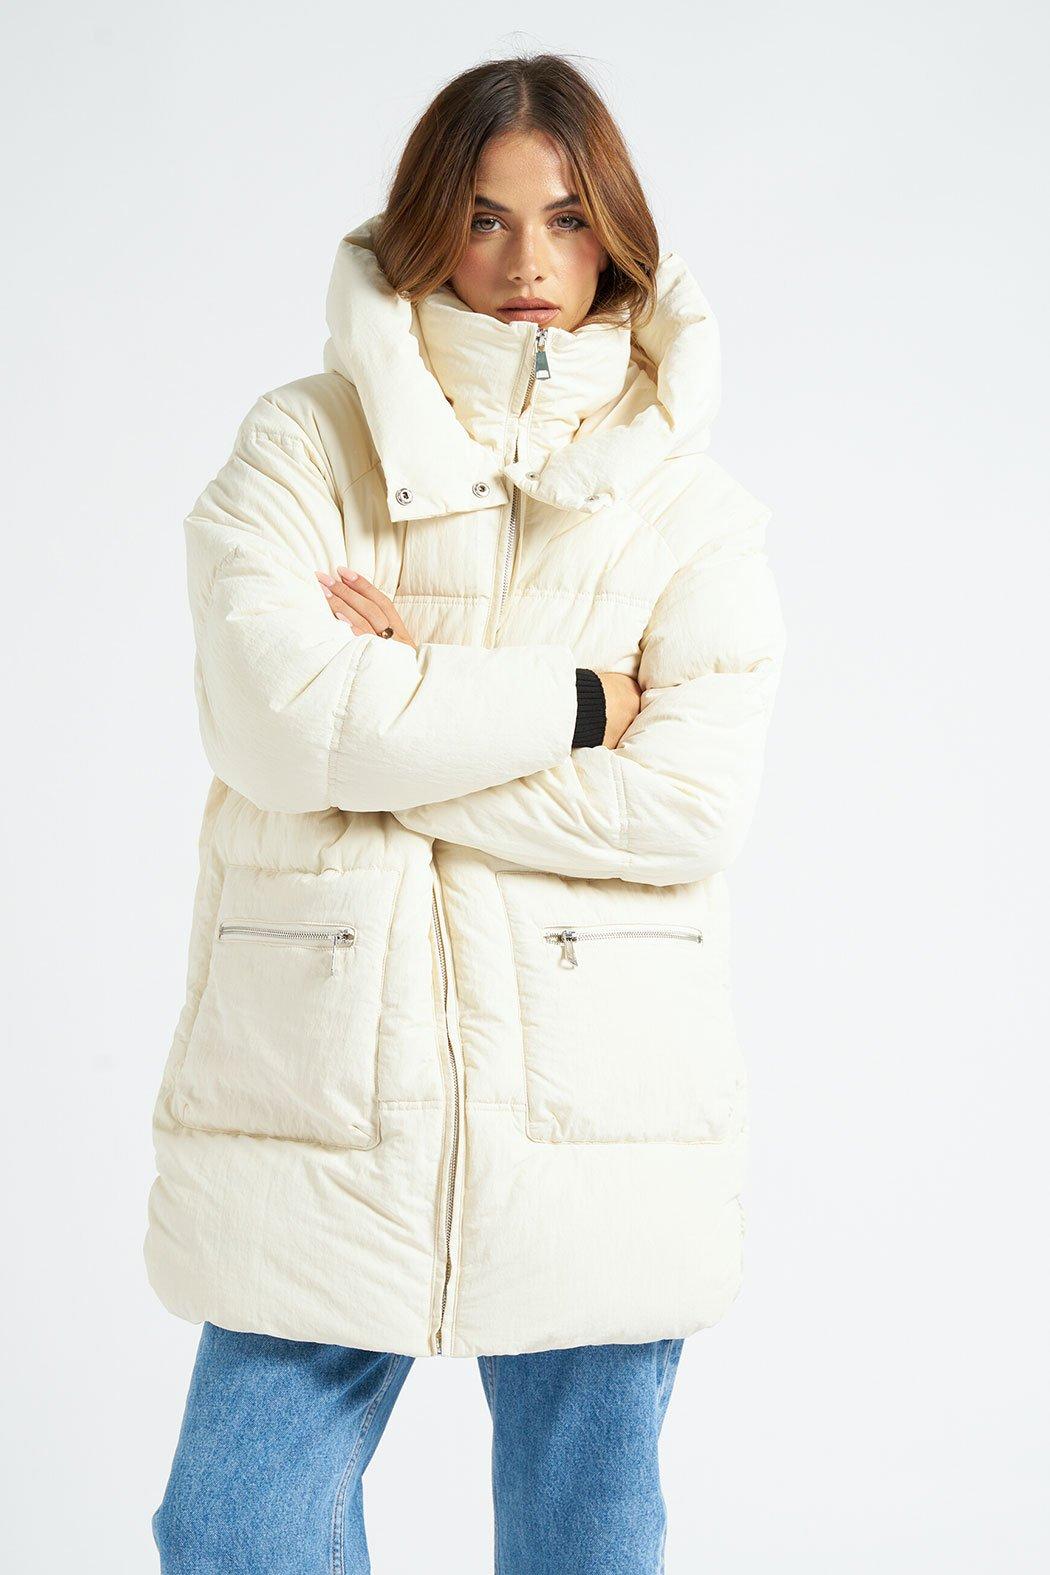 Пуховик средней длины Urban Bliss, белый пиджак eudon choi средней длины размер 46 белый